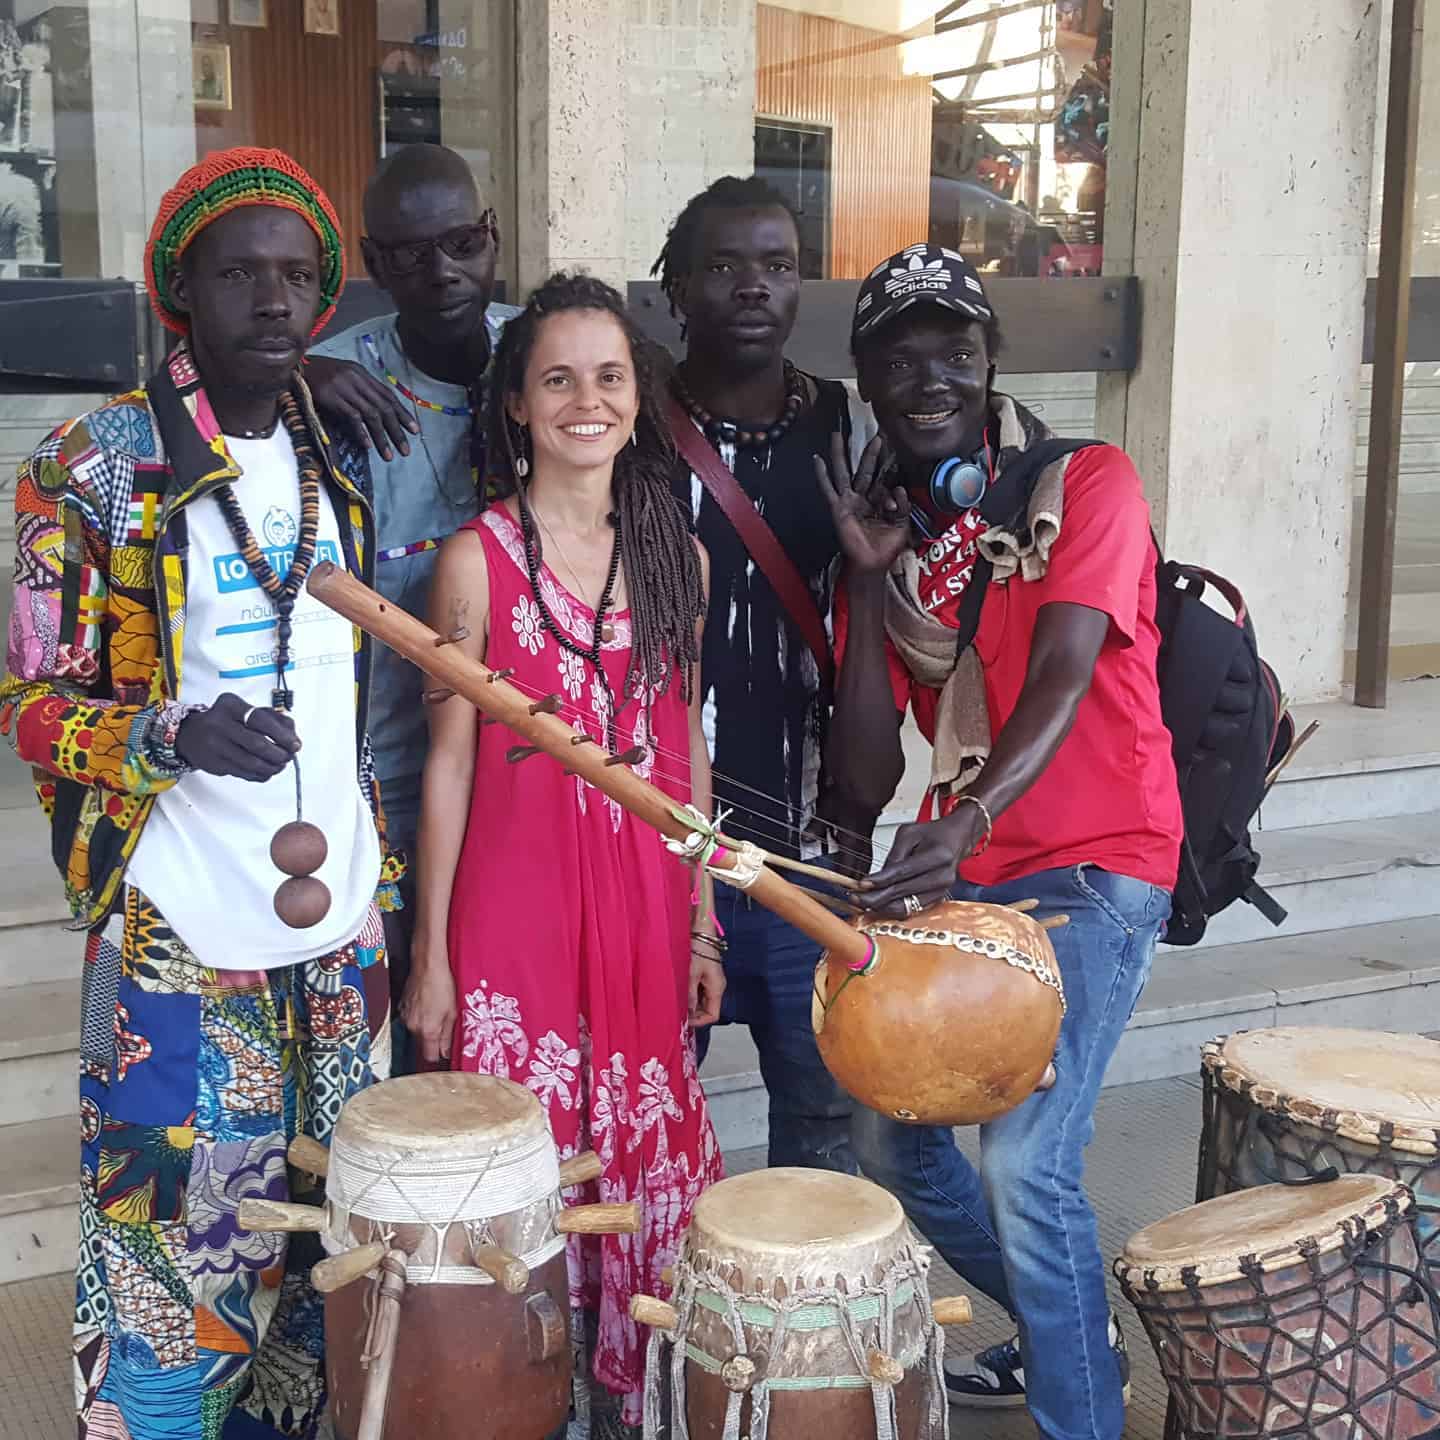 Natural de Mariana, Mo Maie lança disco gravado no Senegal